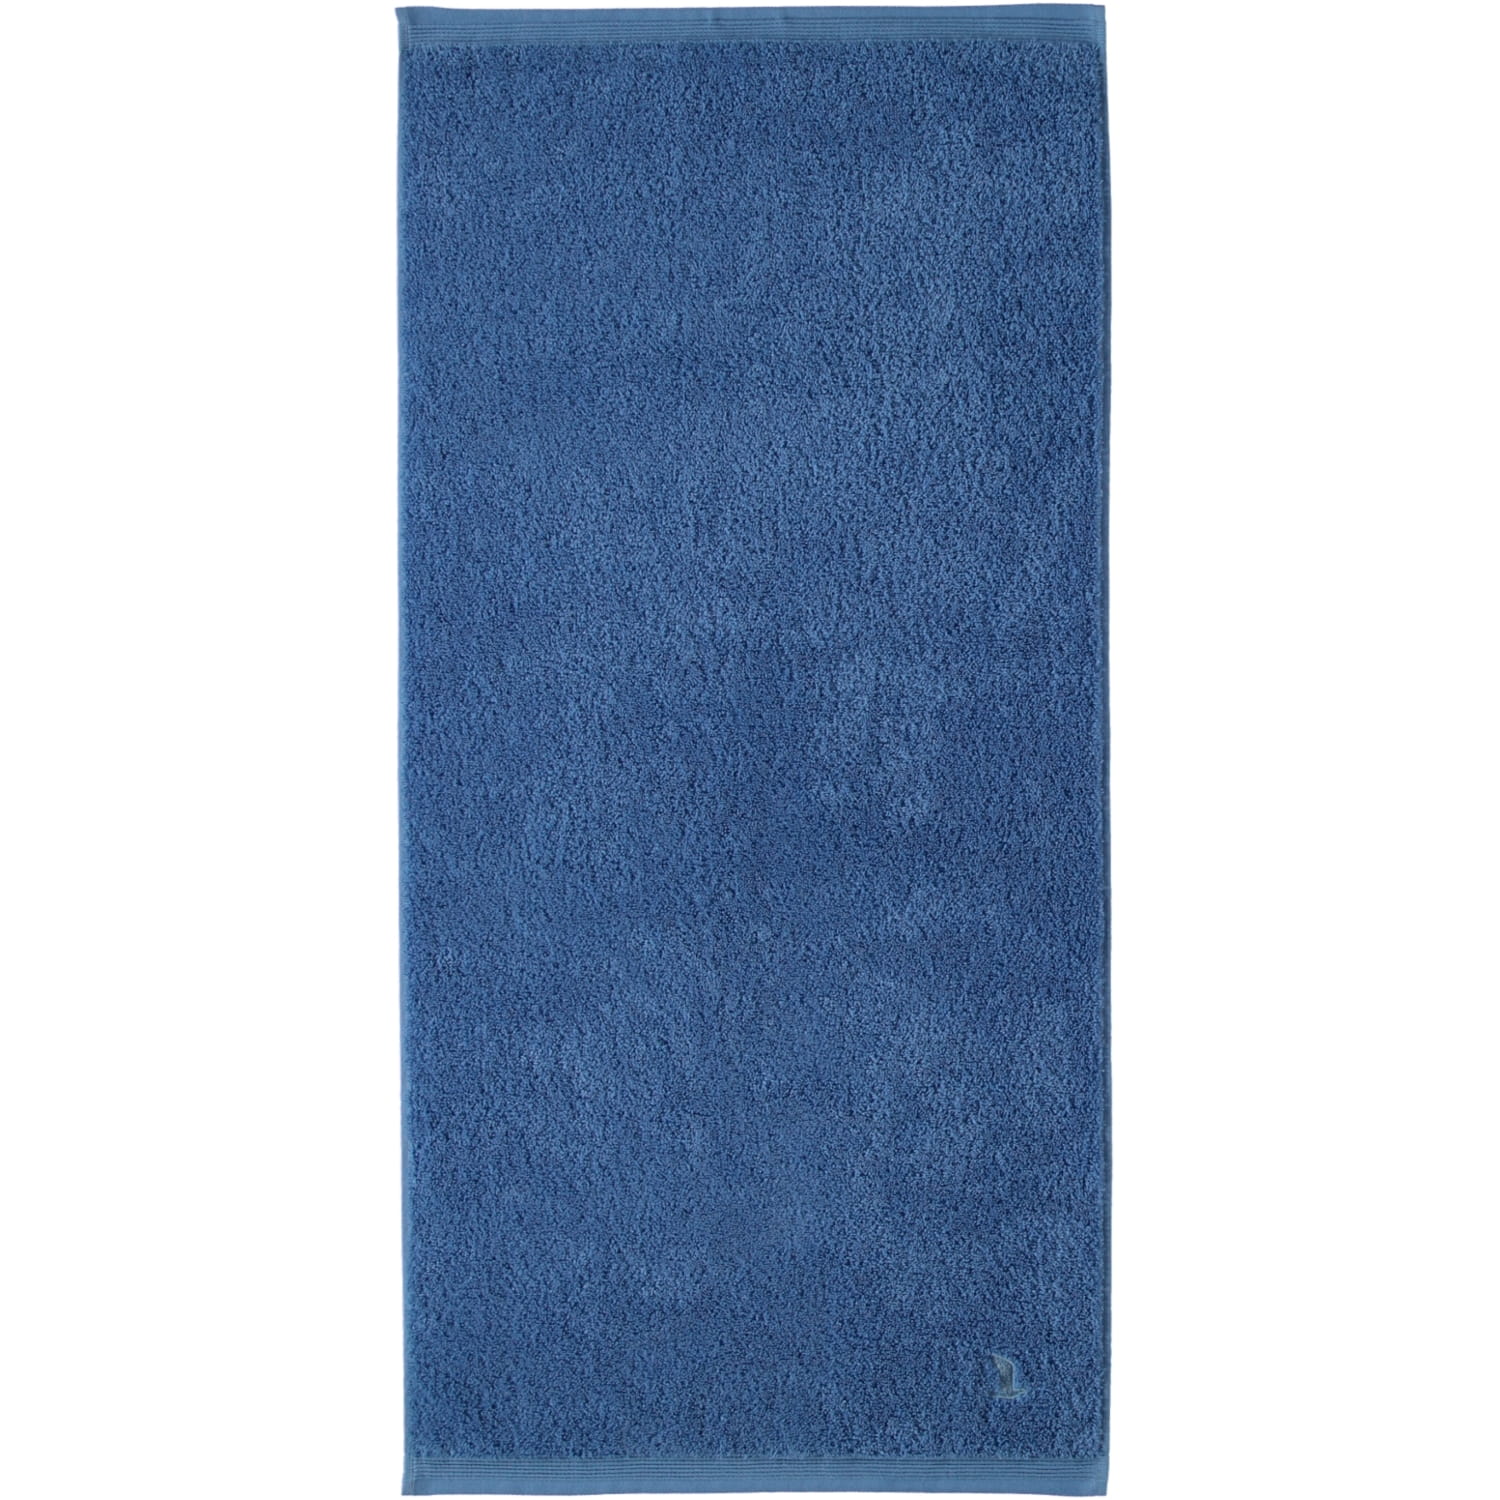 Möve Handtuch Superwuschel 50 x 100 cm, Blau